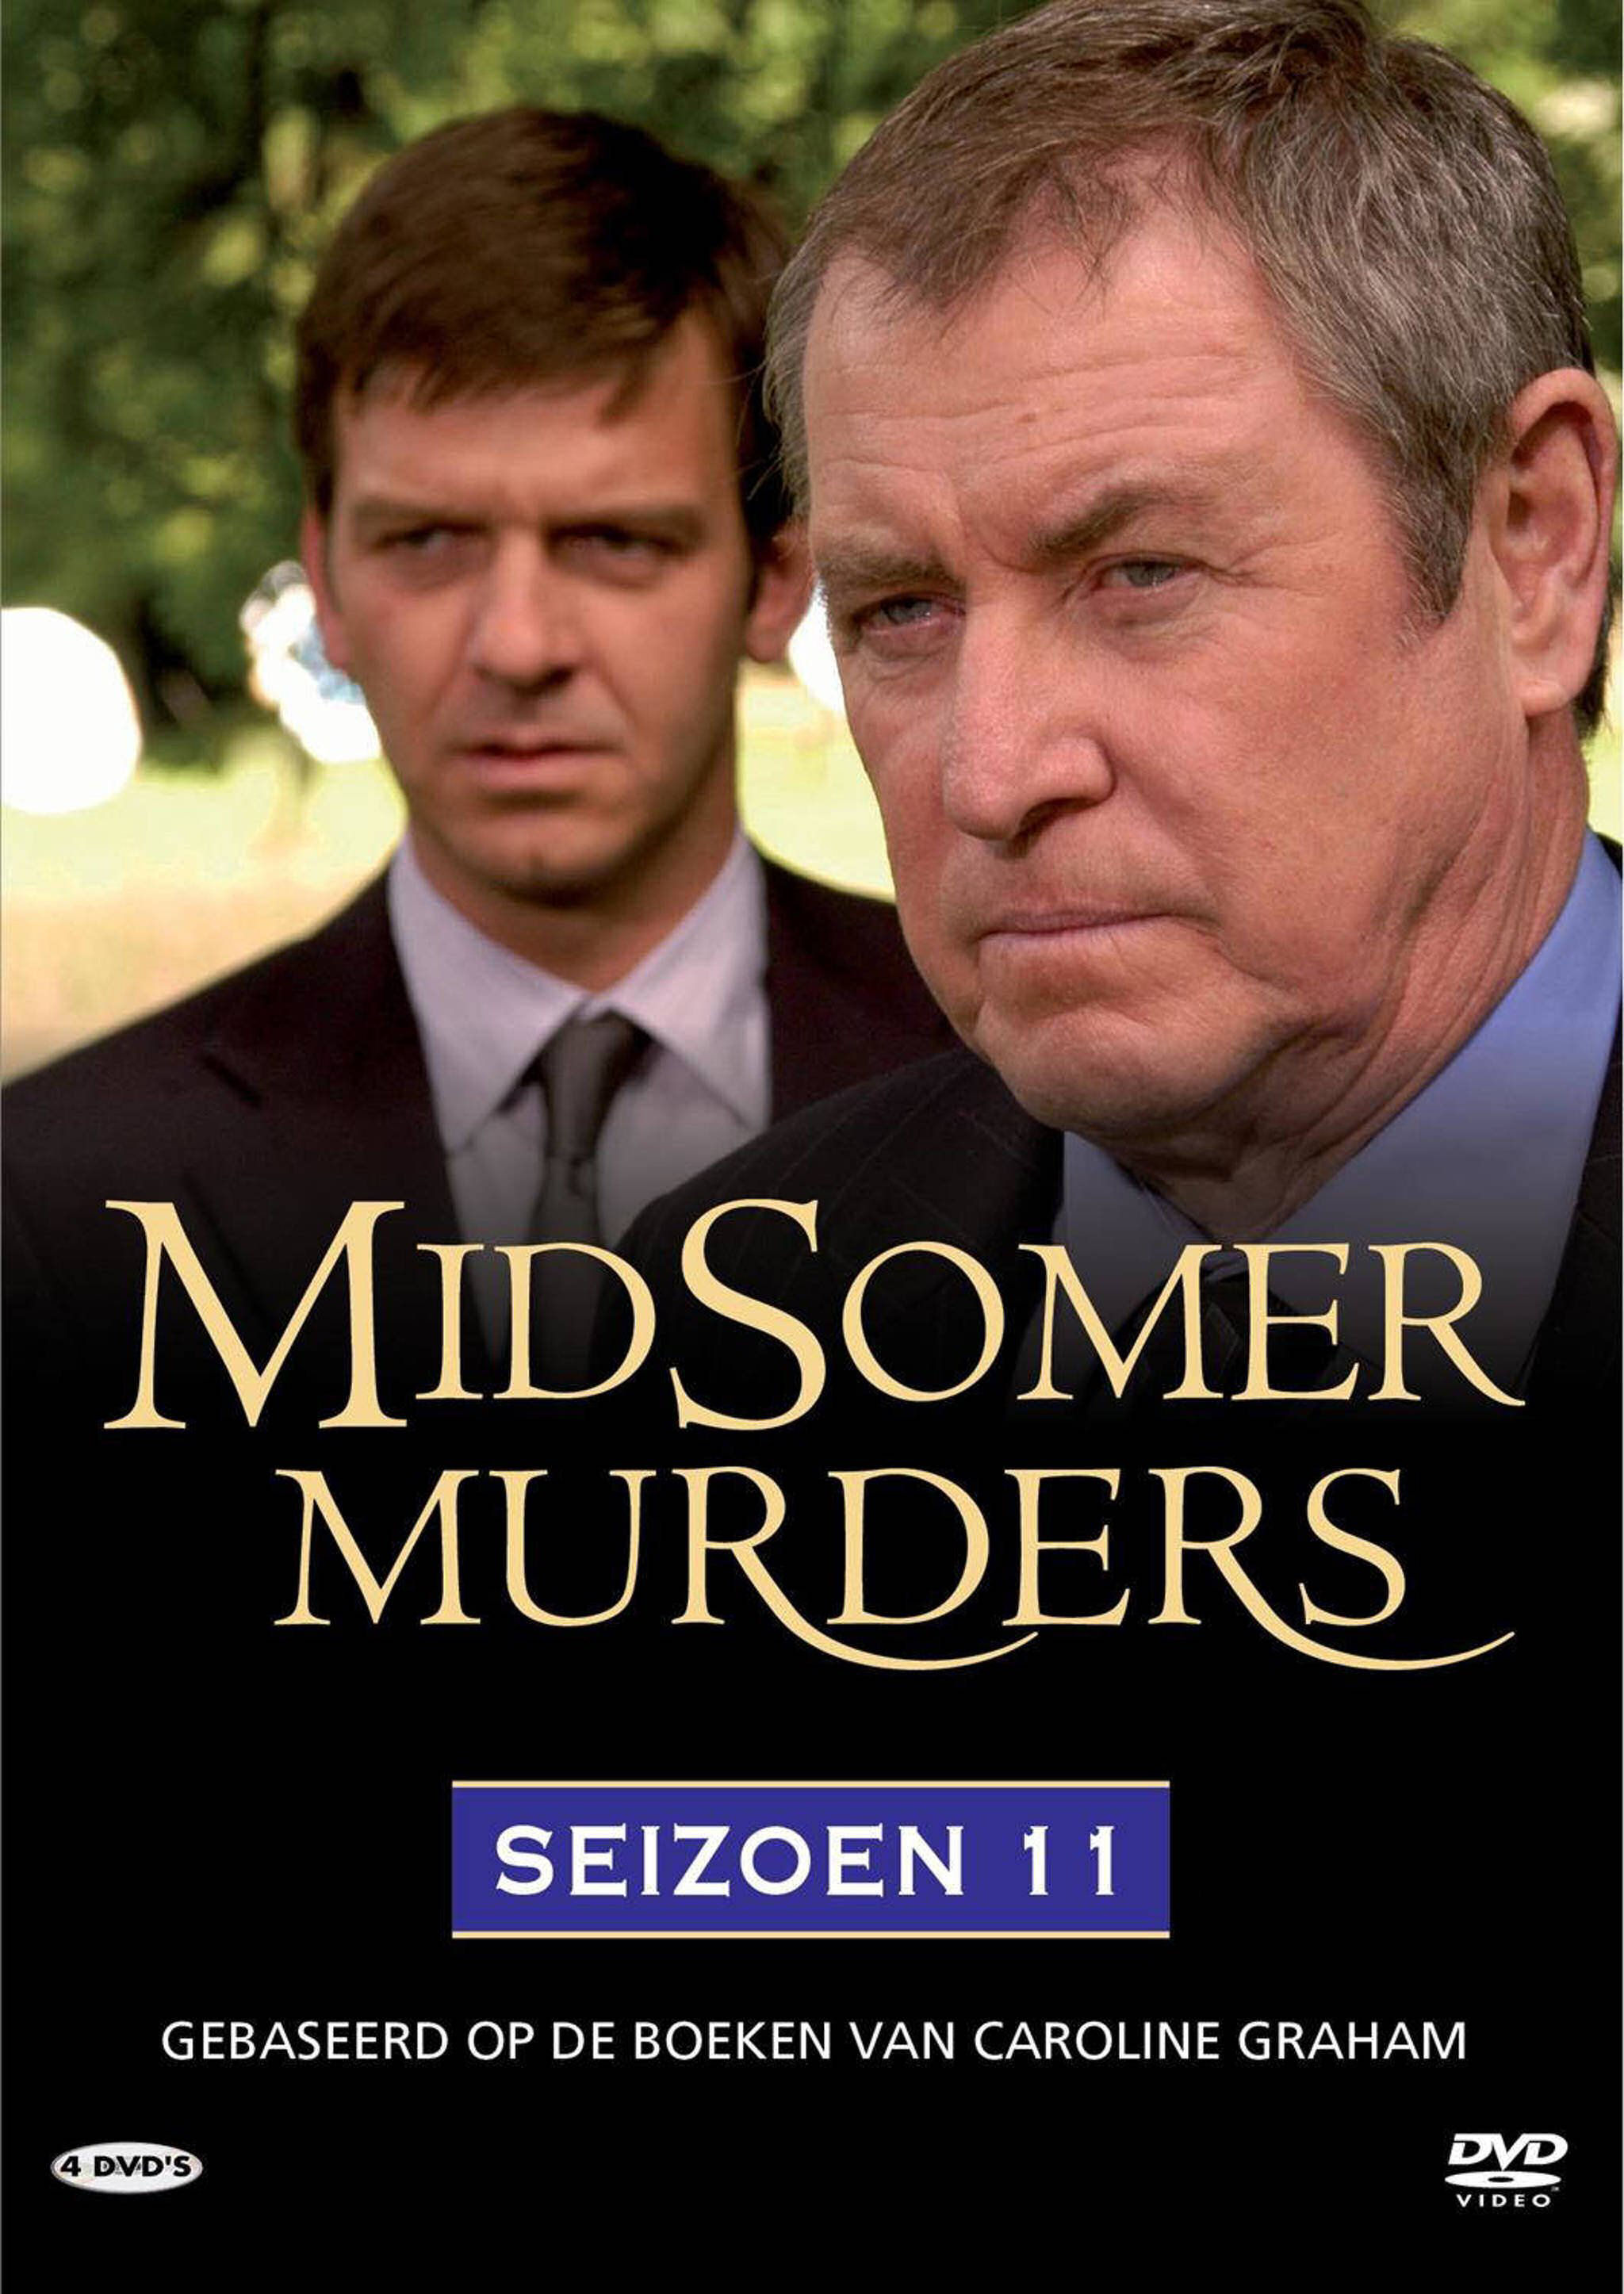 Midsomer Murders Seizoen 11 - DvD 5